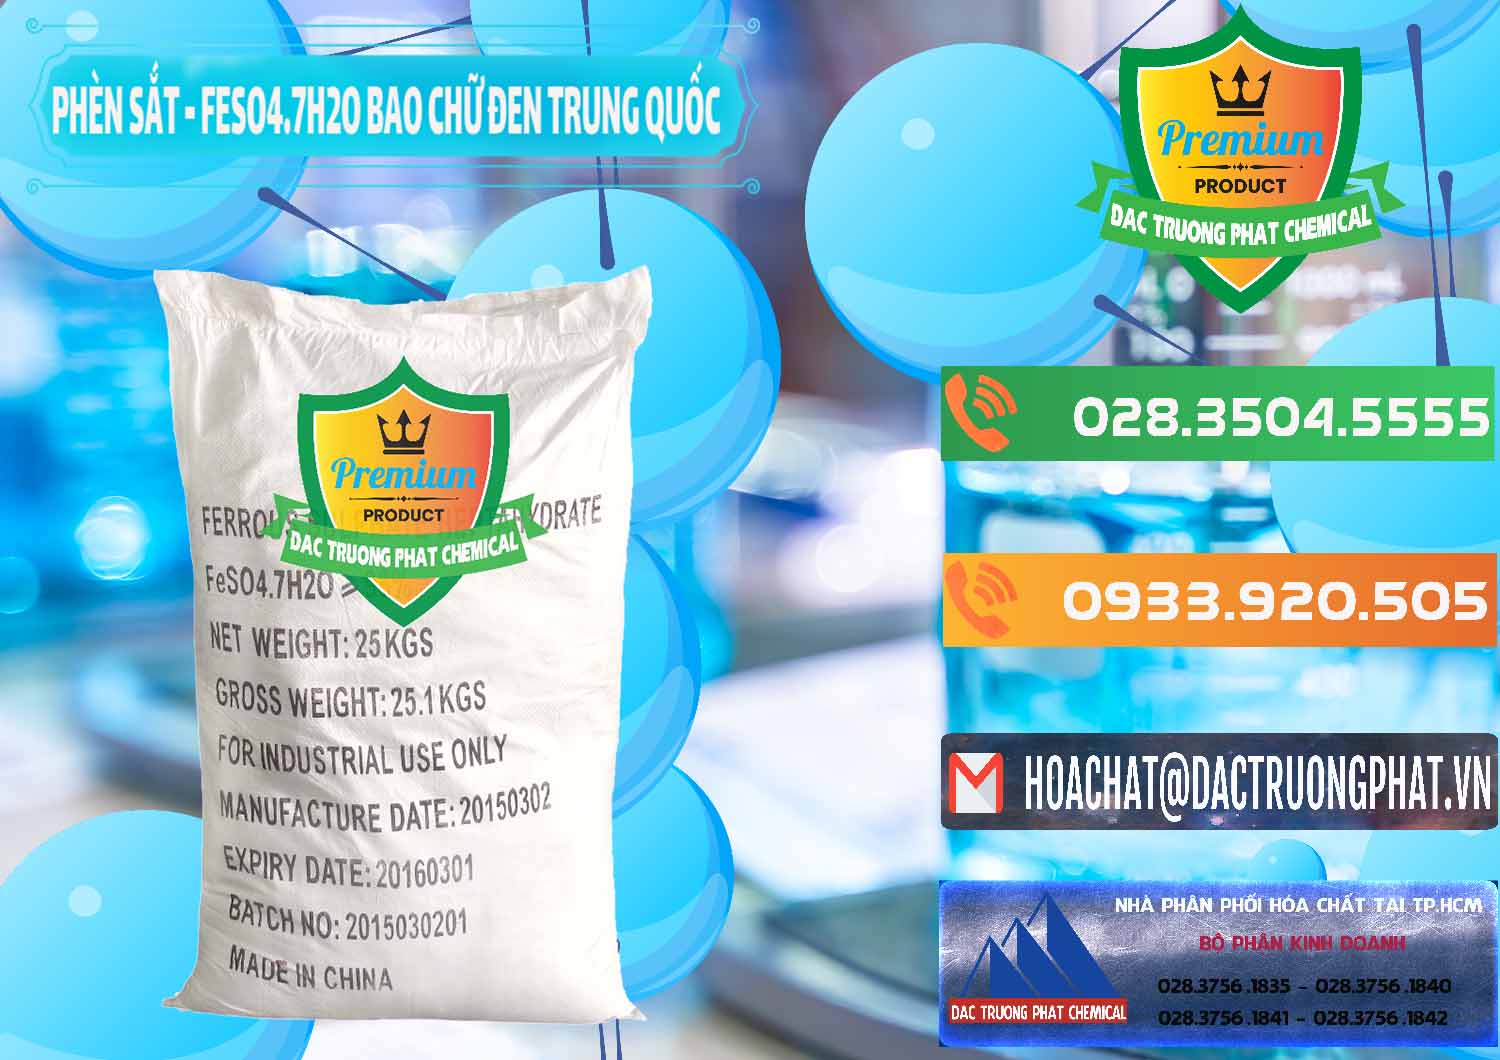 Cty bán & cung ứng Phèn Sắt - FeSO4.7H2O Bao Chữ Đen Trung Quốc China - 0234 - Cty phân phối _ cung cấp hóa chất tại TP.HCM - hoachatxulynuoc.com.vn